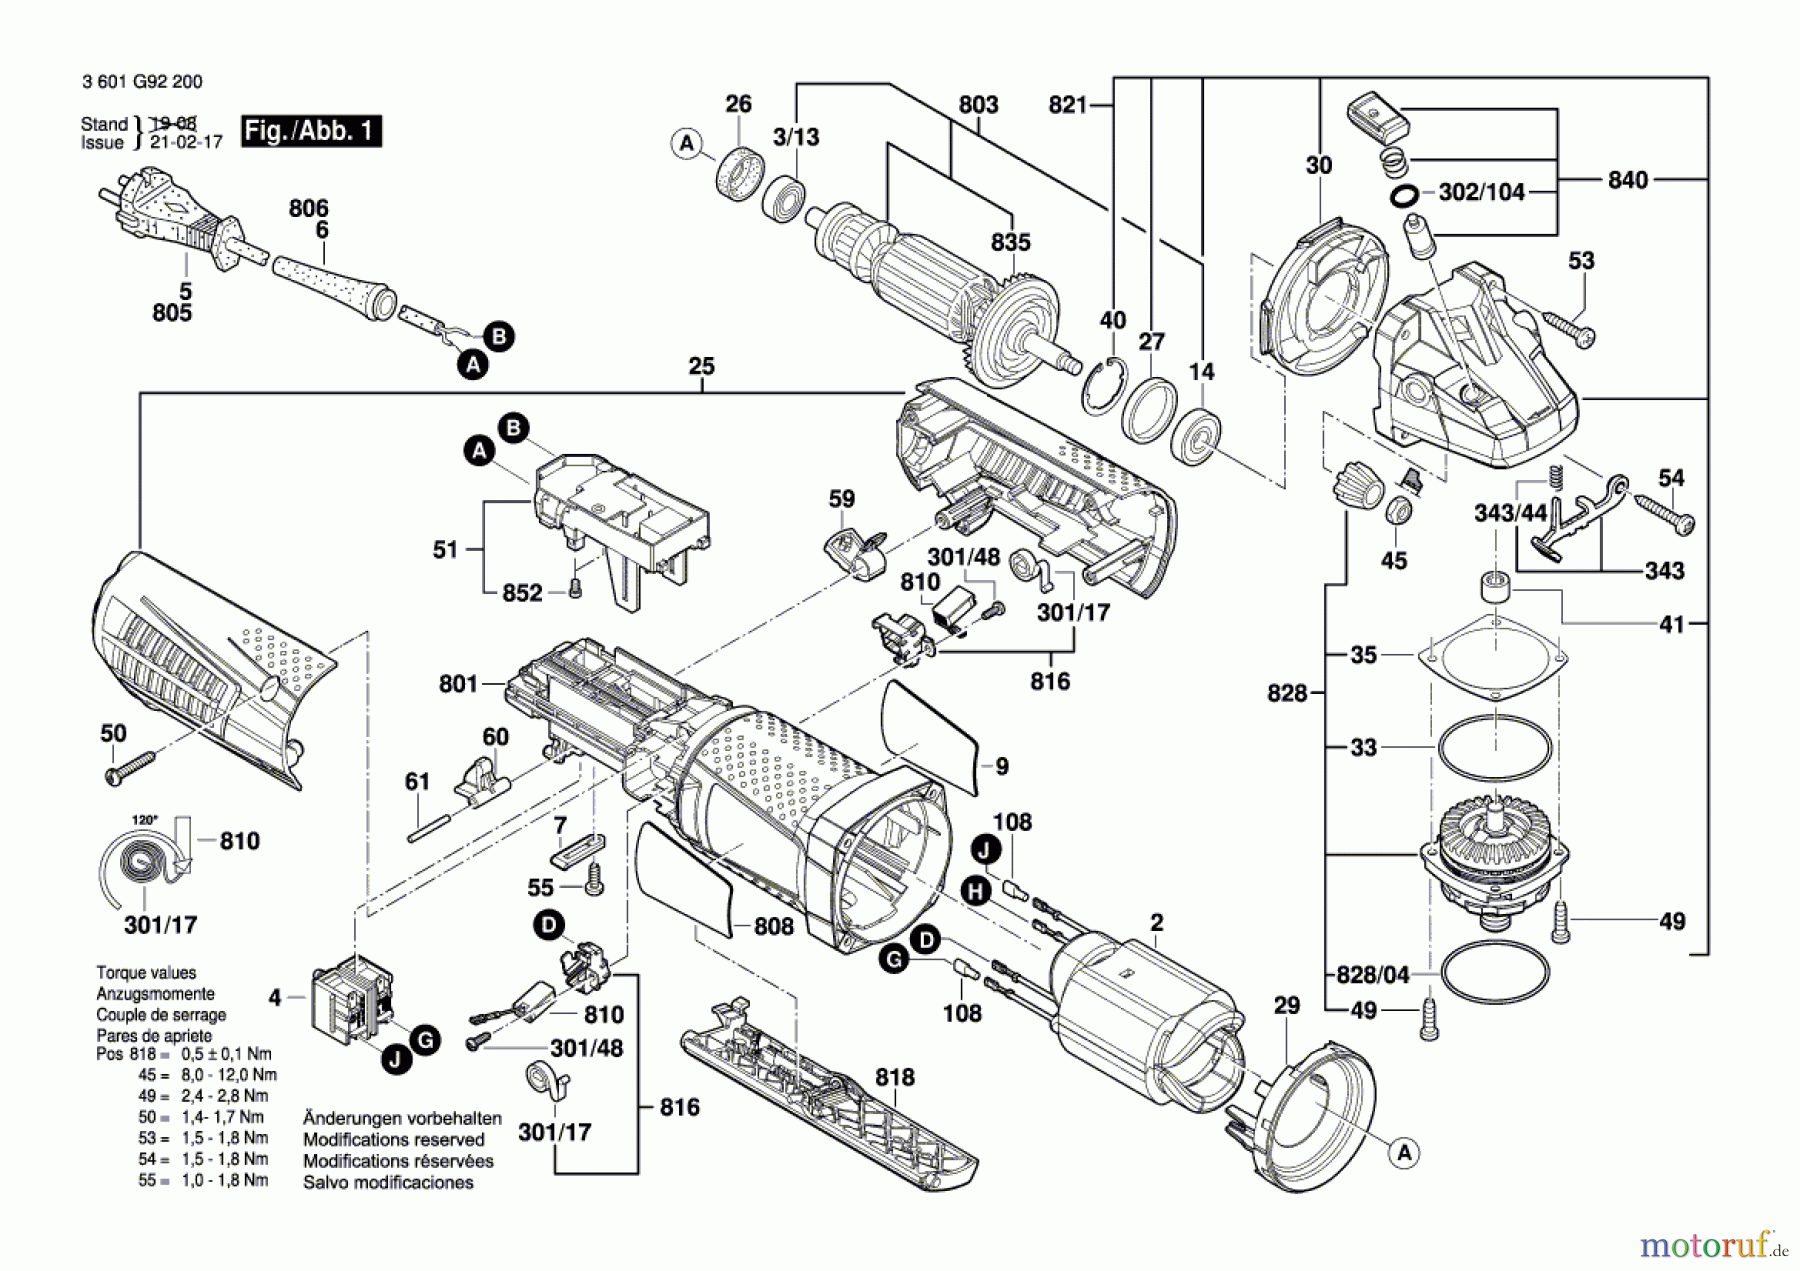  Bosch Werkzeug Winkelschleifer GWS 11-125 P Seite 1